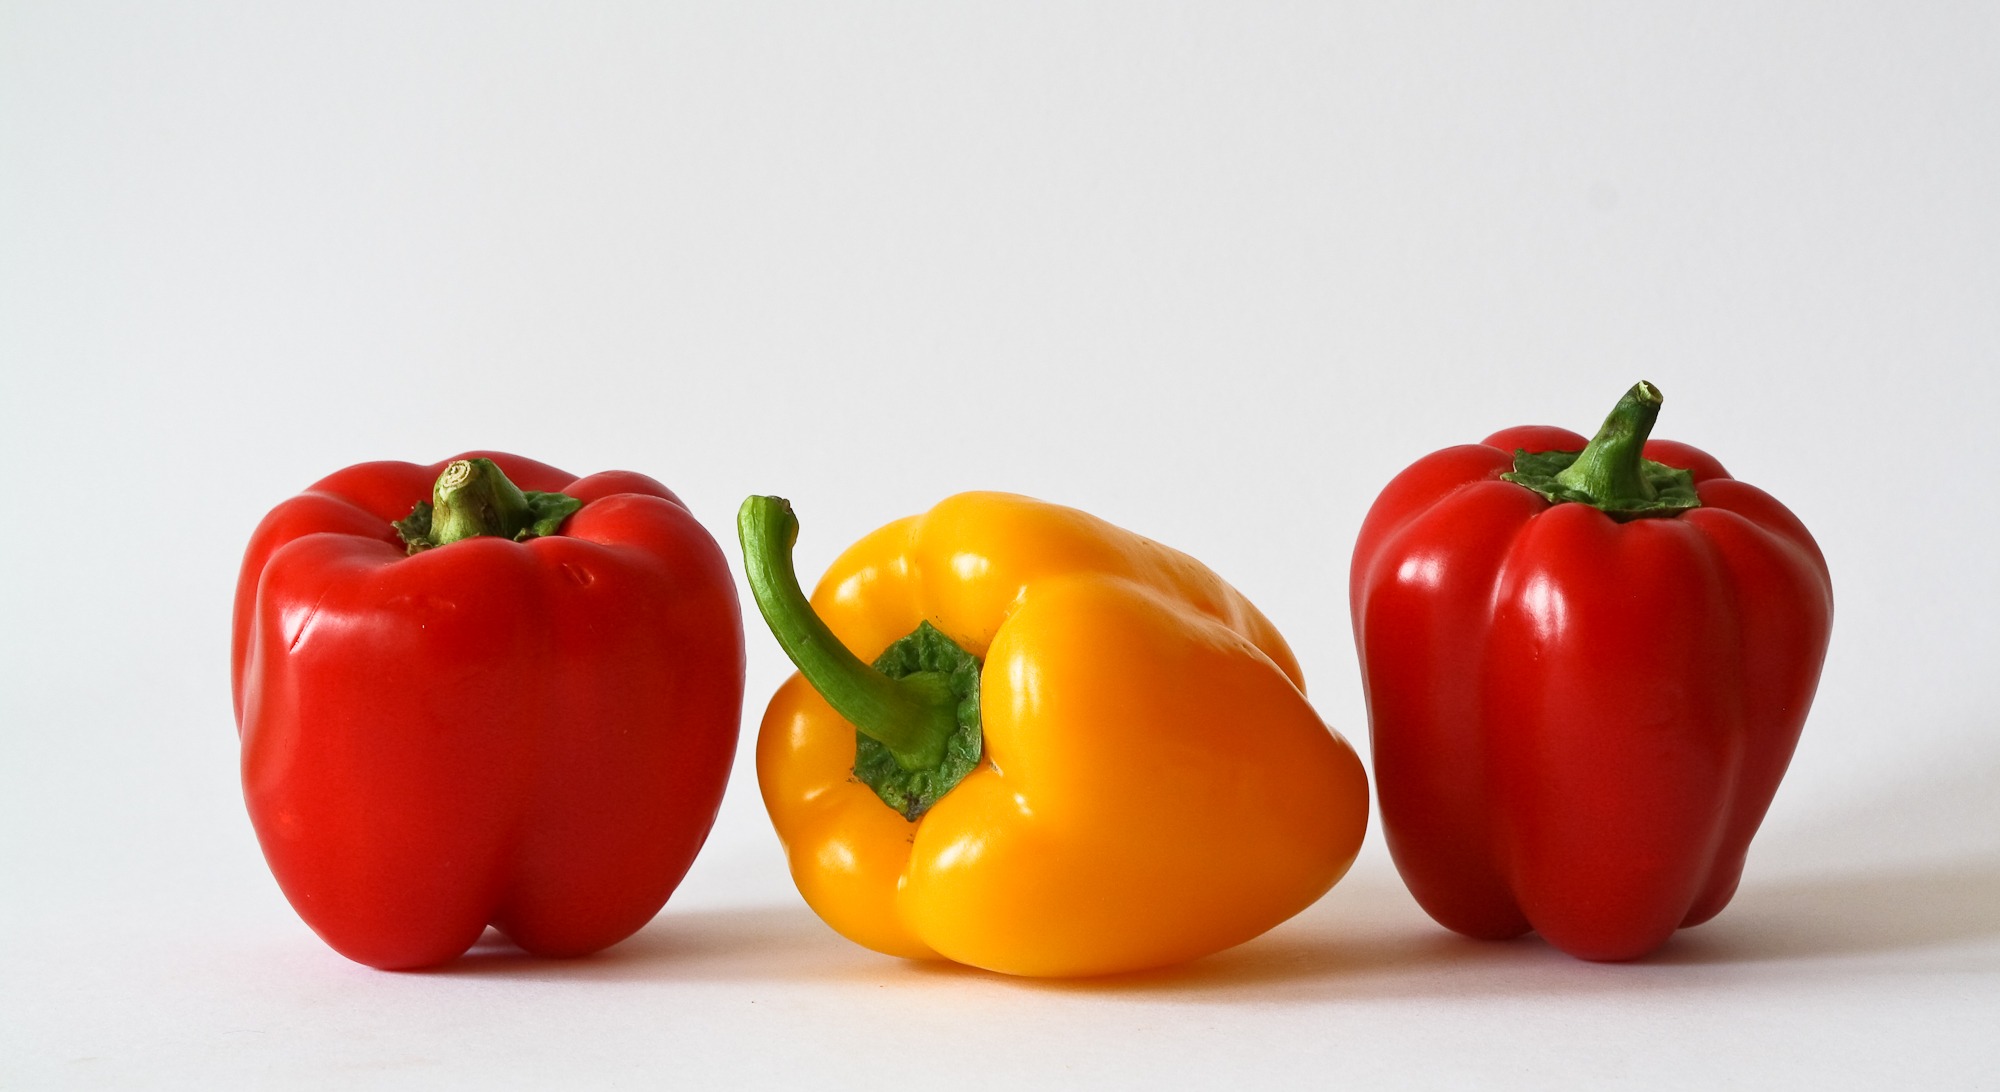 paprika-vegetables-colorful-food-57426 (1)